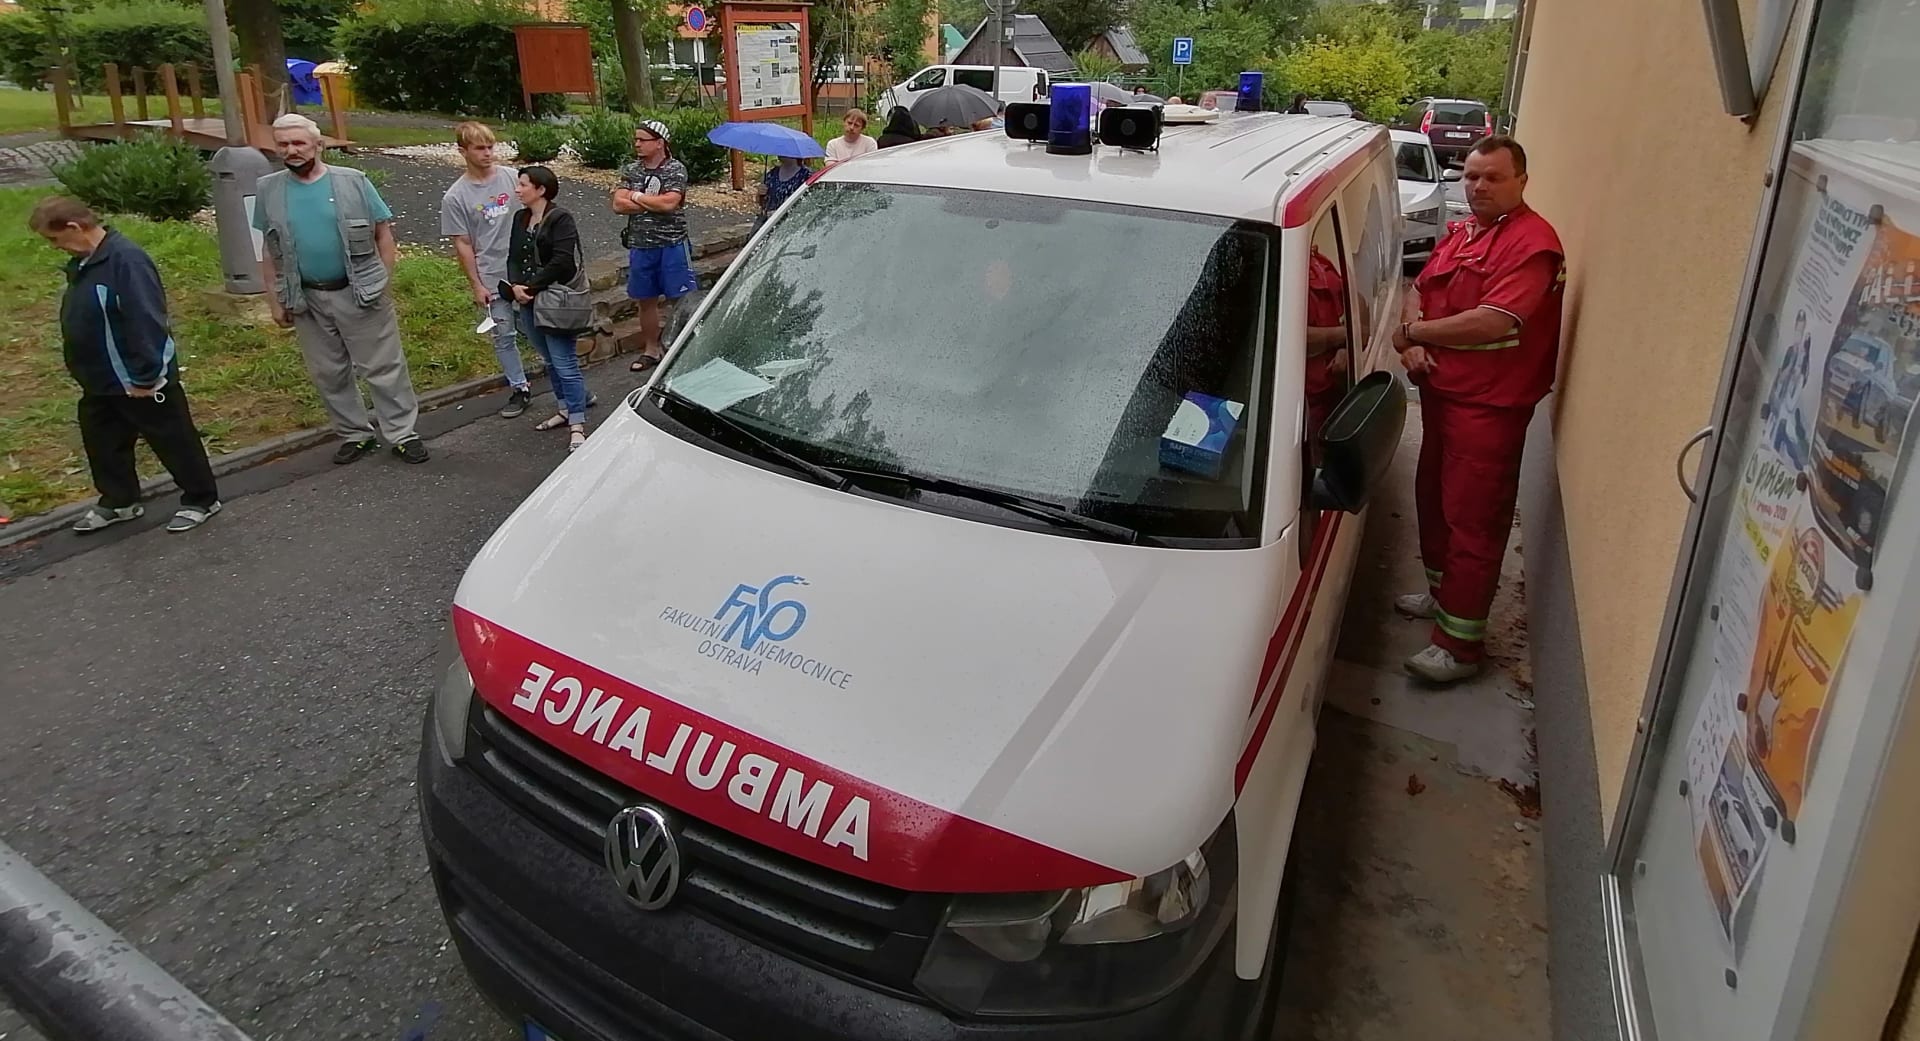 Mobilní očkovací centrum ve Vítkově v okrese Opava. Místní Romové ovšem nepřišli.